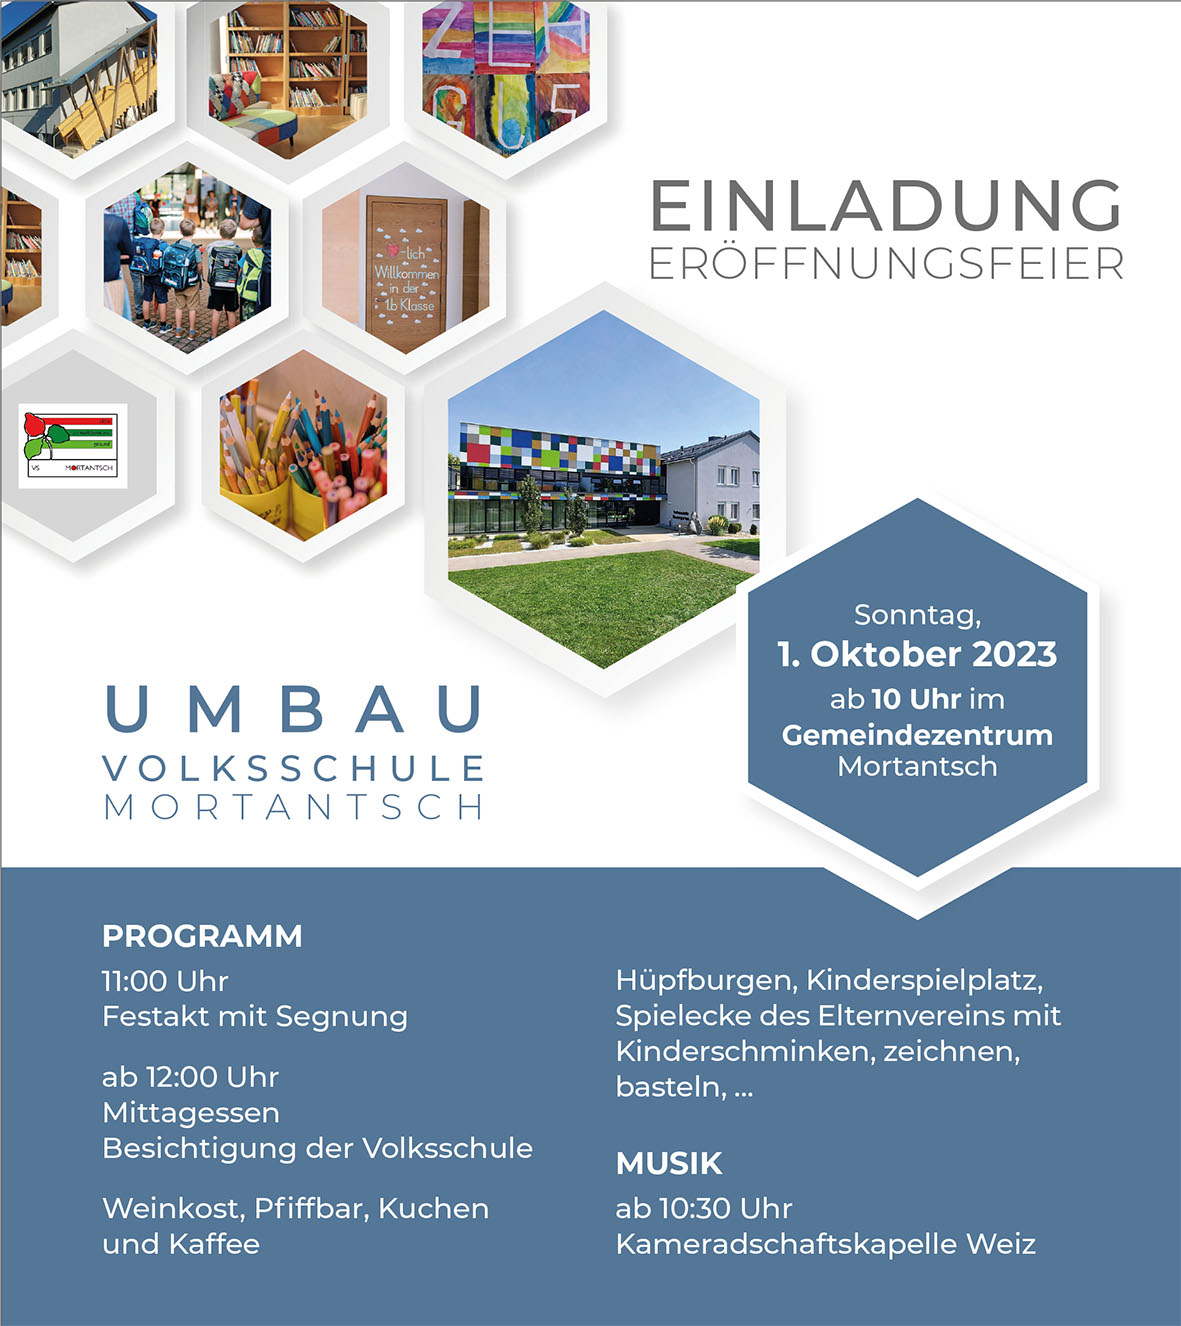 Featured image for “Eröffnungsfeier der Volksschule”